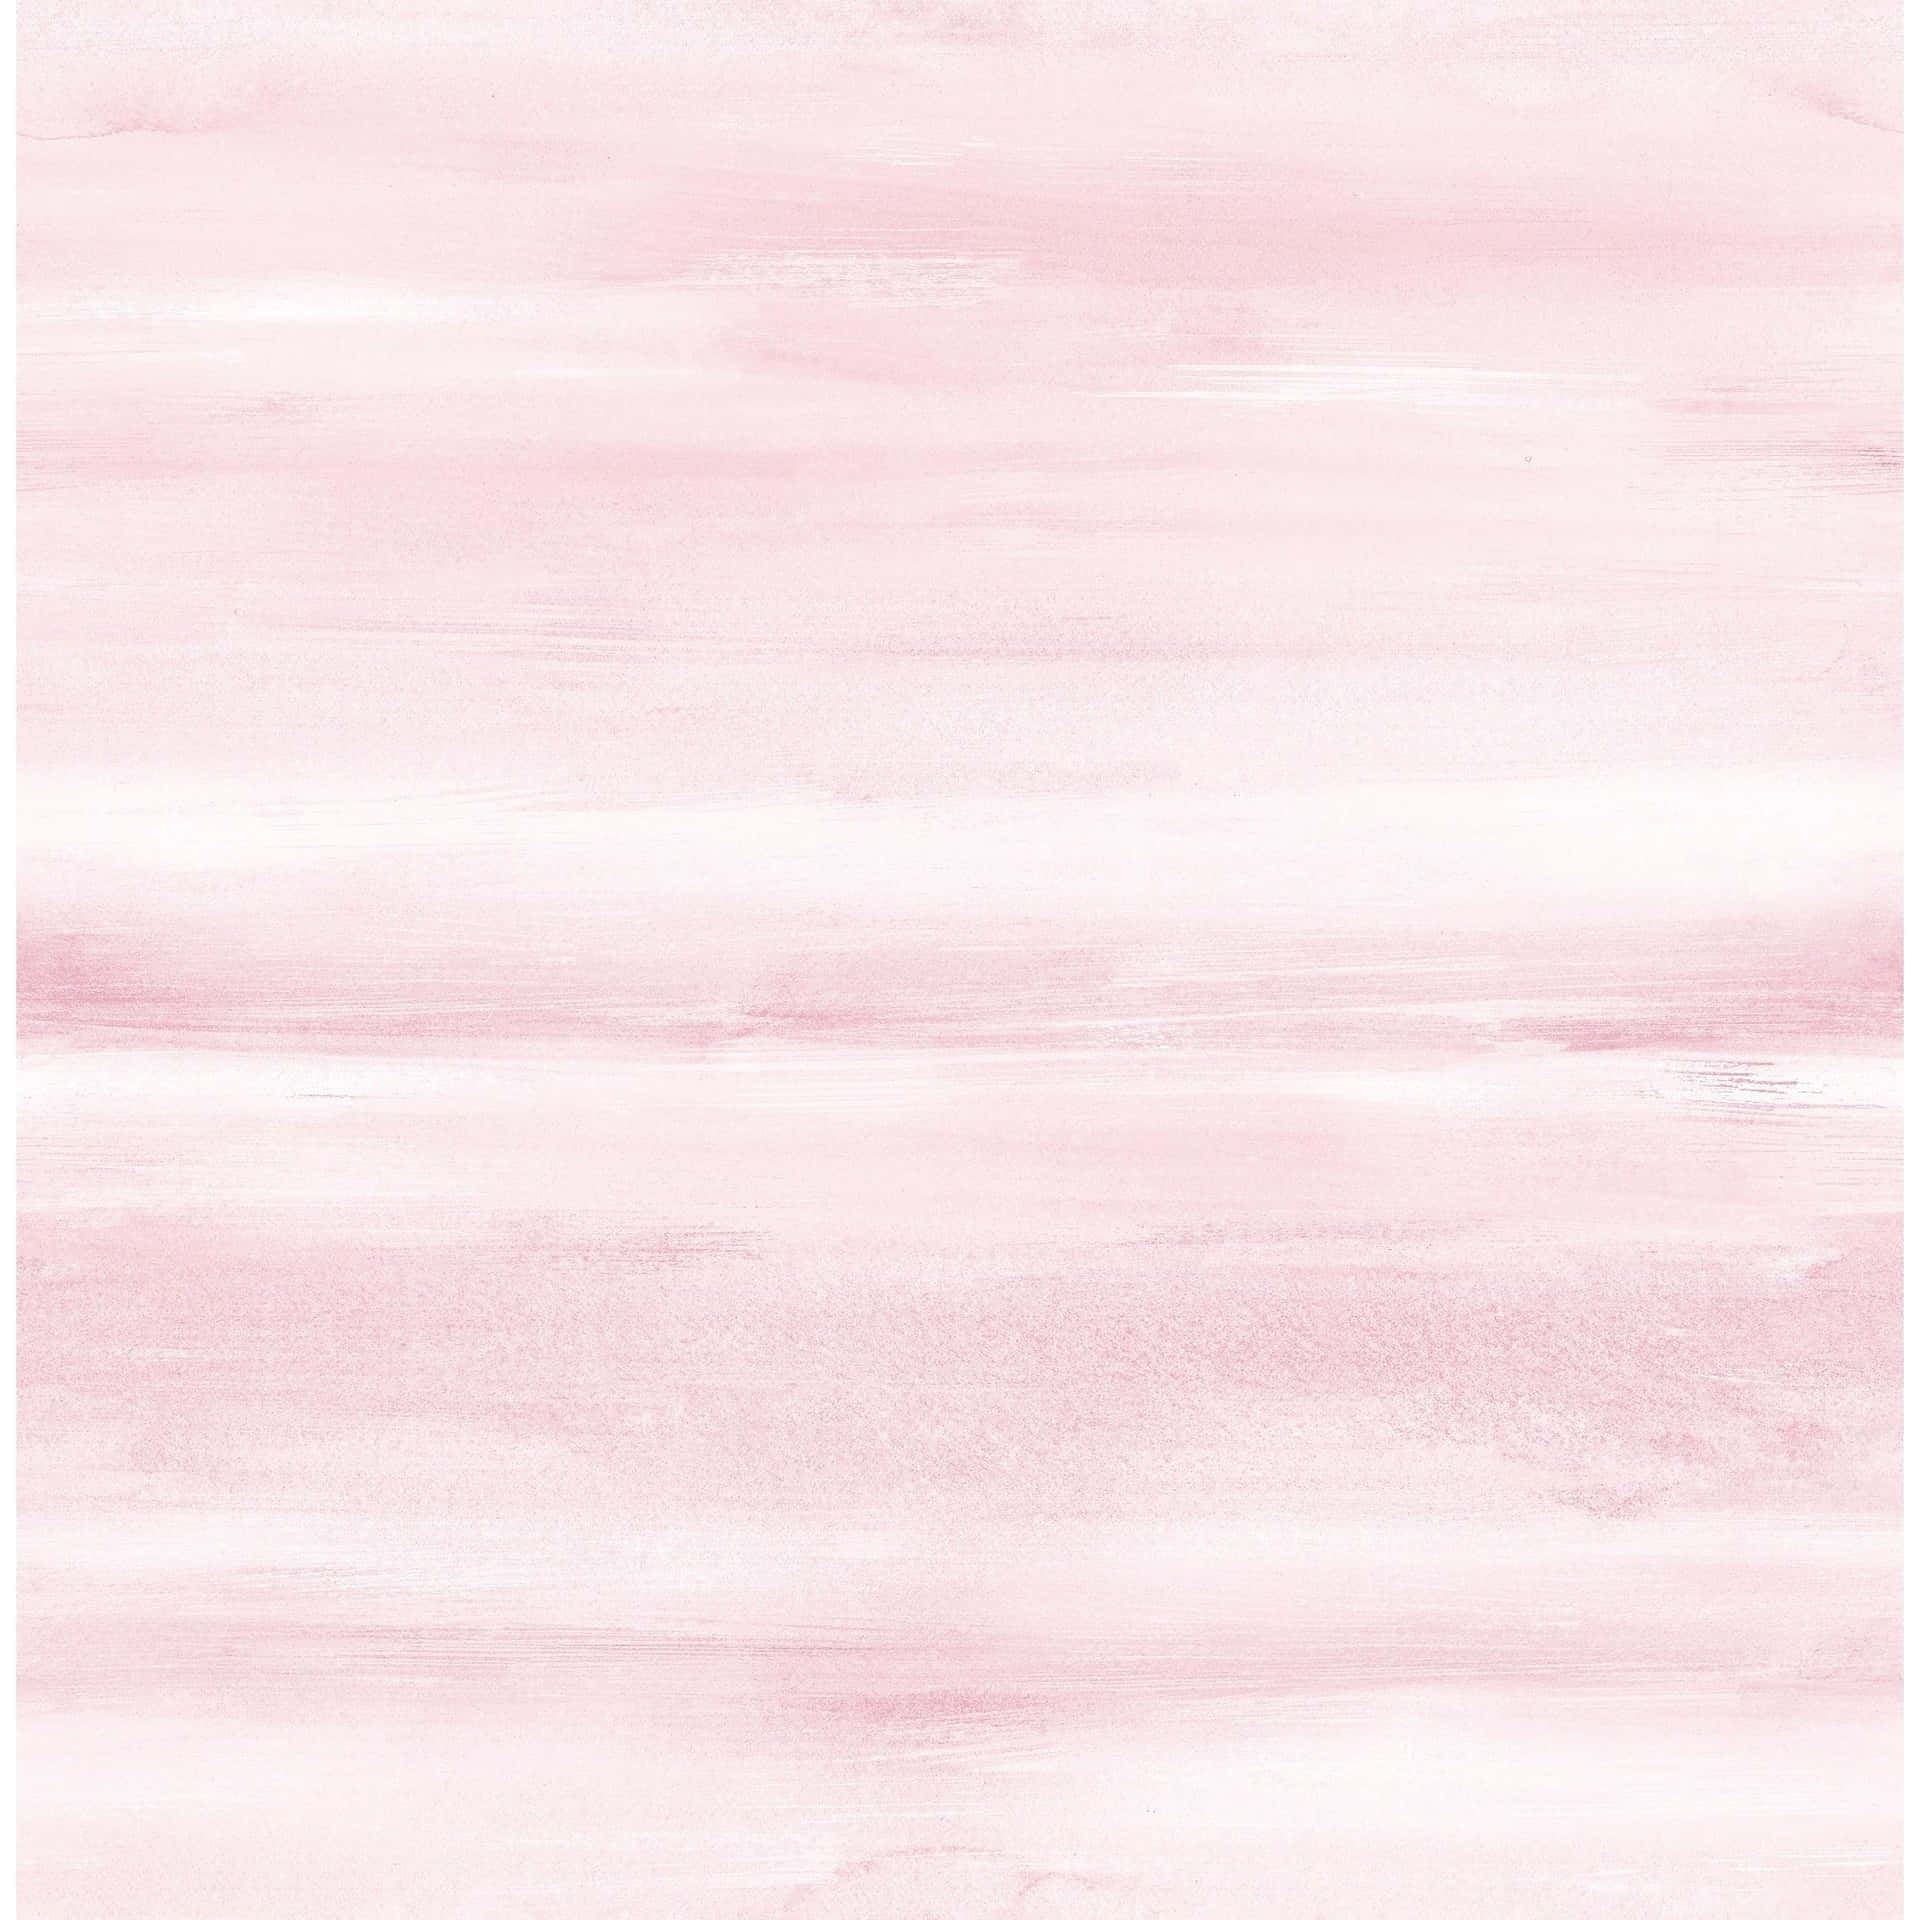 Et blødt lyserødt og livligt akvarelmaleri af et landligt landskab. Wallpaper